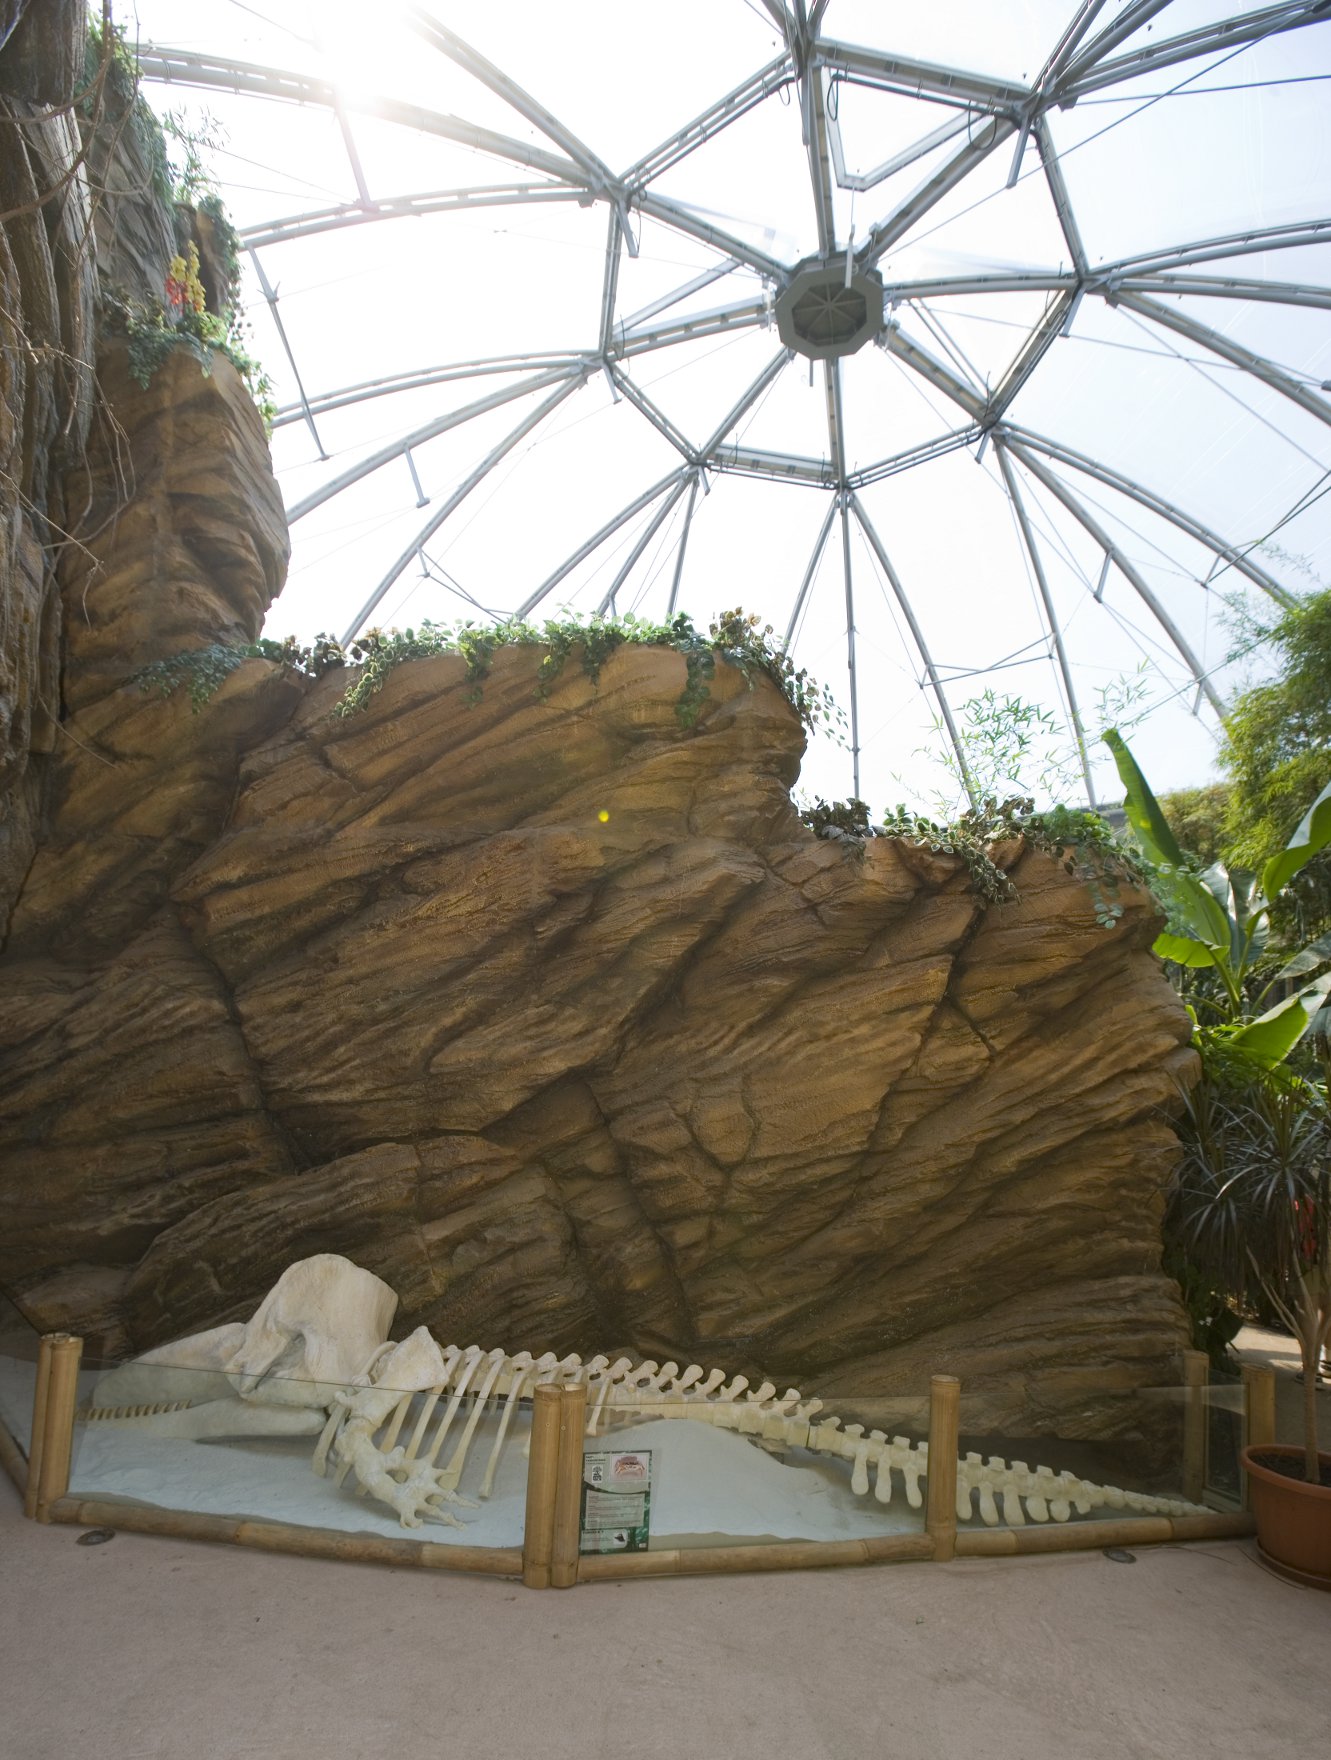 Ein Texlon® ETFE Foliendach bildet das konstruktive und gestalterische Herz der Grünen Pyramide (Green Pyramid), des neuen Lebensraums für Komodowarane im Sóstó Zoo.